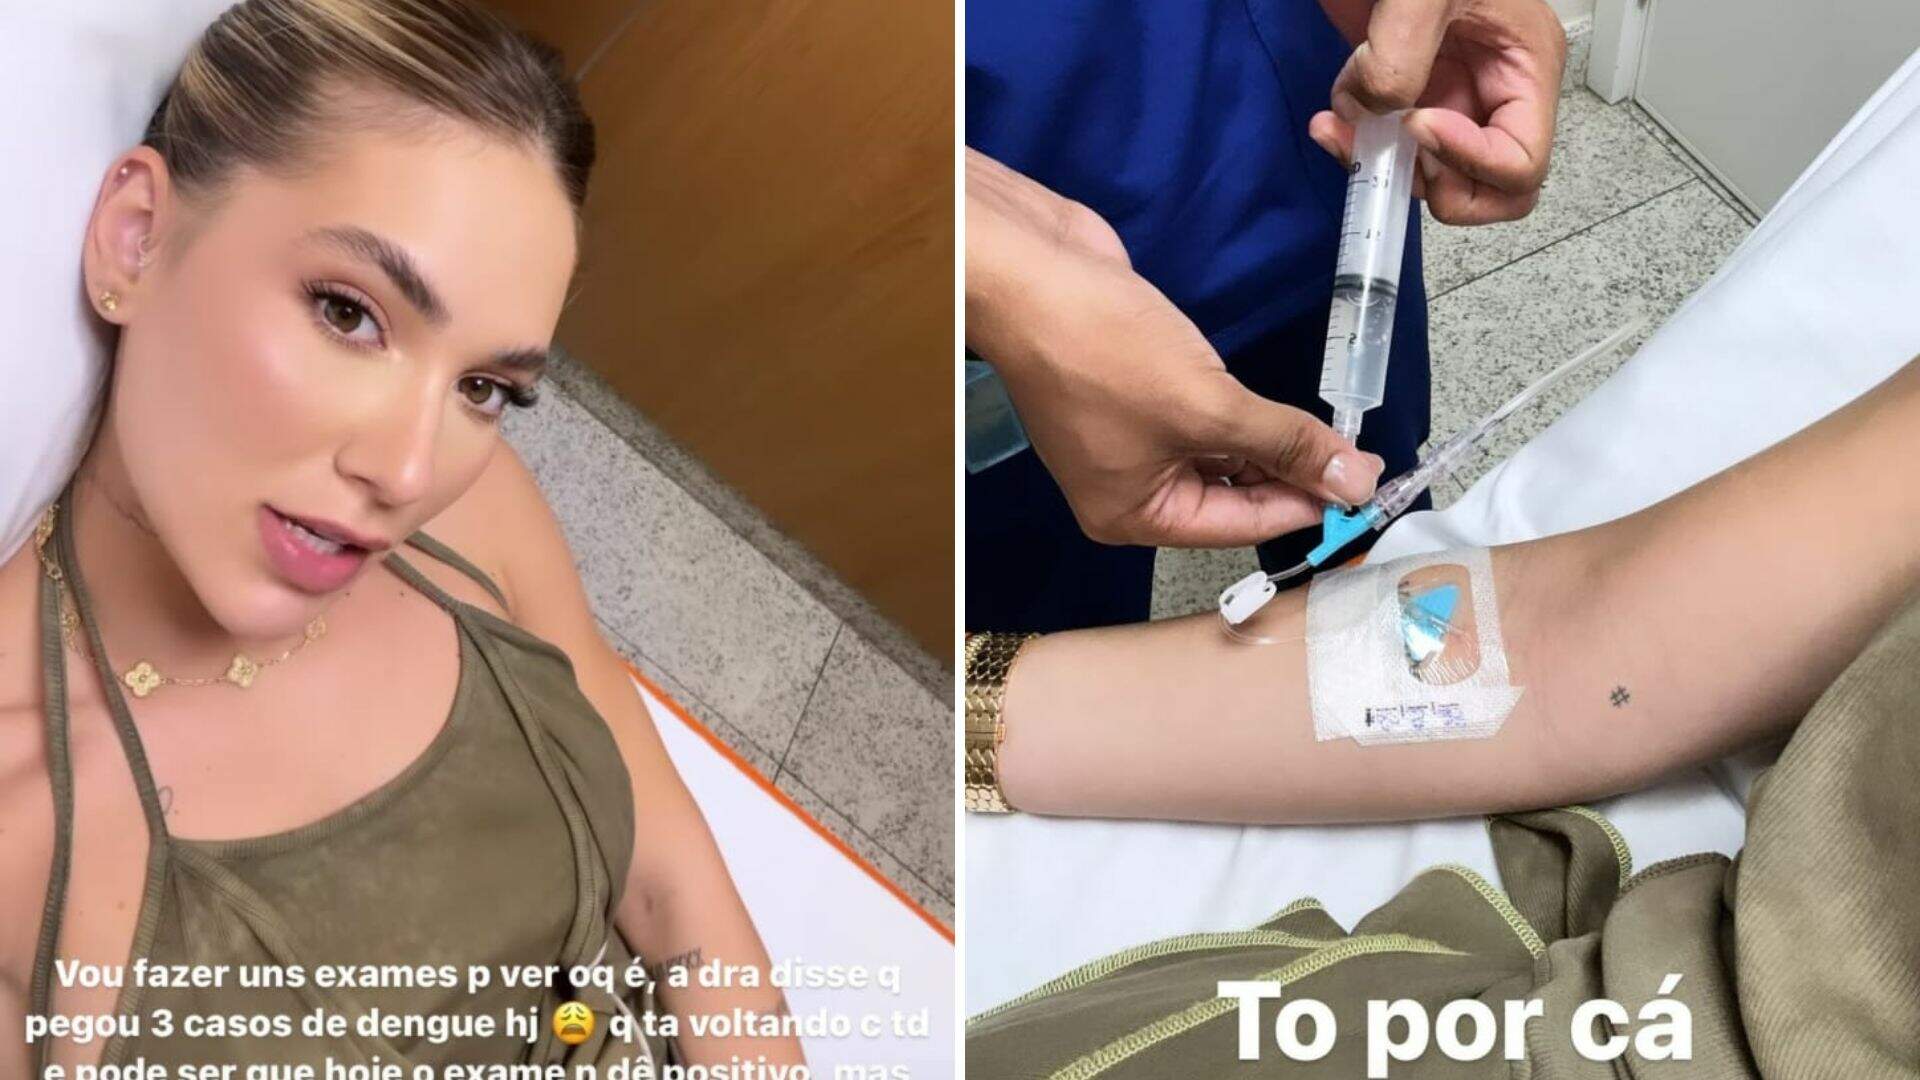 Virgínia Fonseca preocupa fãs ao aparecer no hospital: “Dor que não passa”